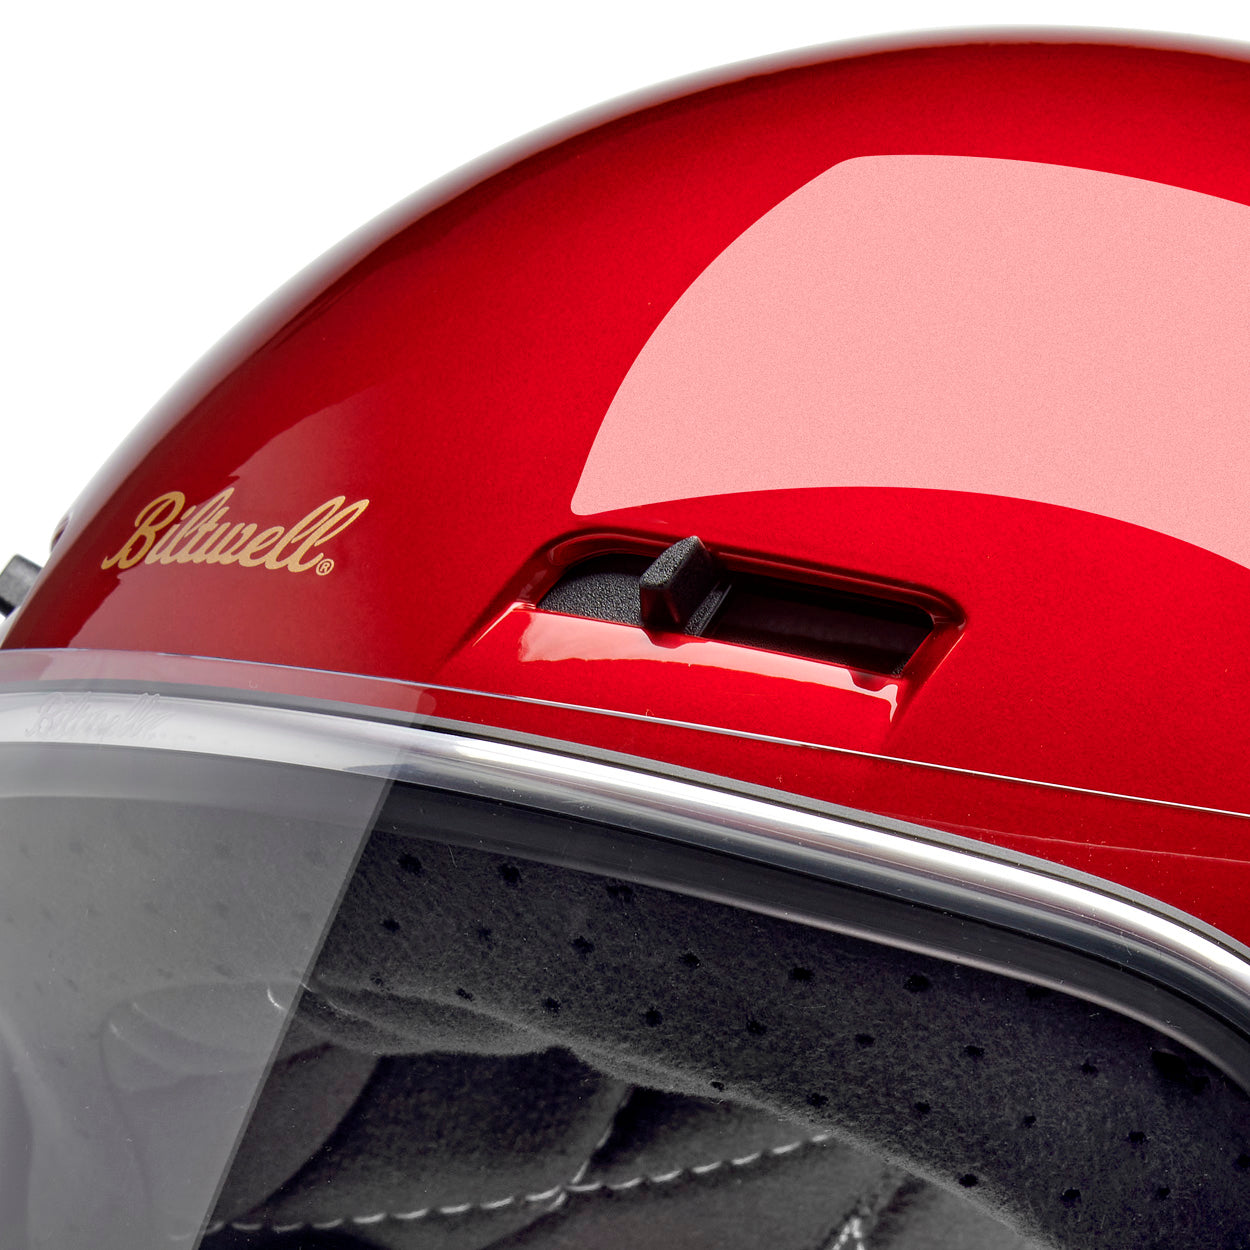 Gringo SV ECE R22.06 Helmet - Metallic Cherry Red